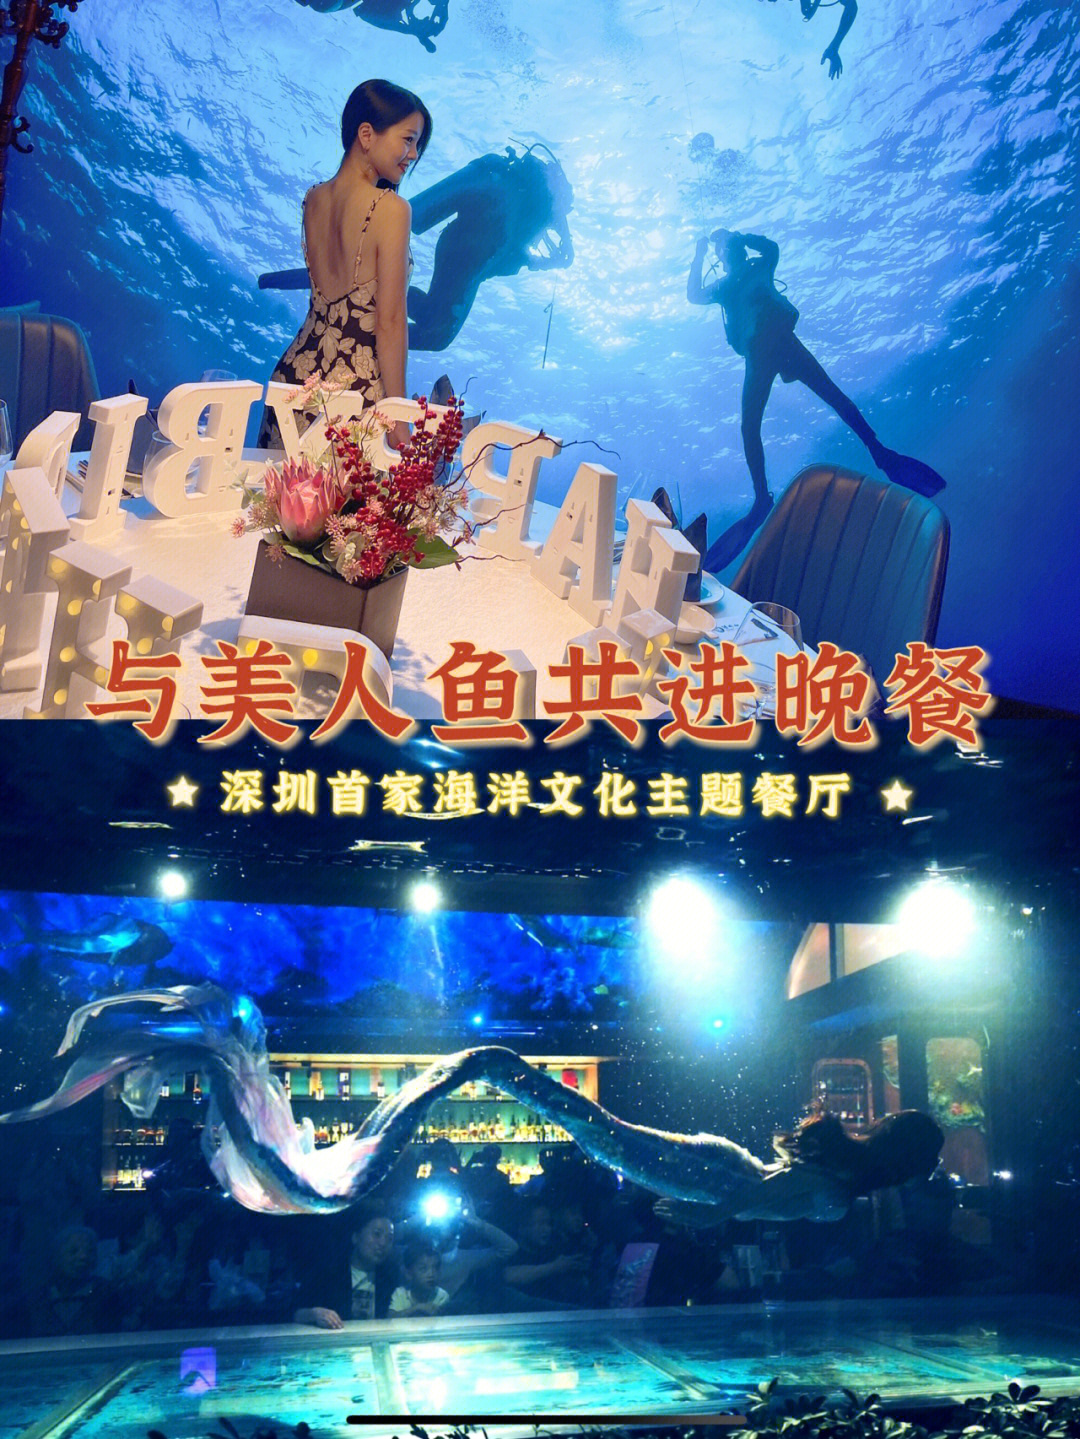 深圳生日餐厅与美人鱼共进晚餐的海底餐厅